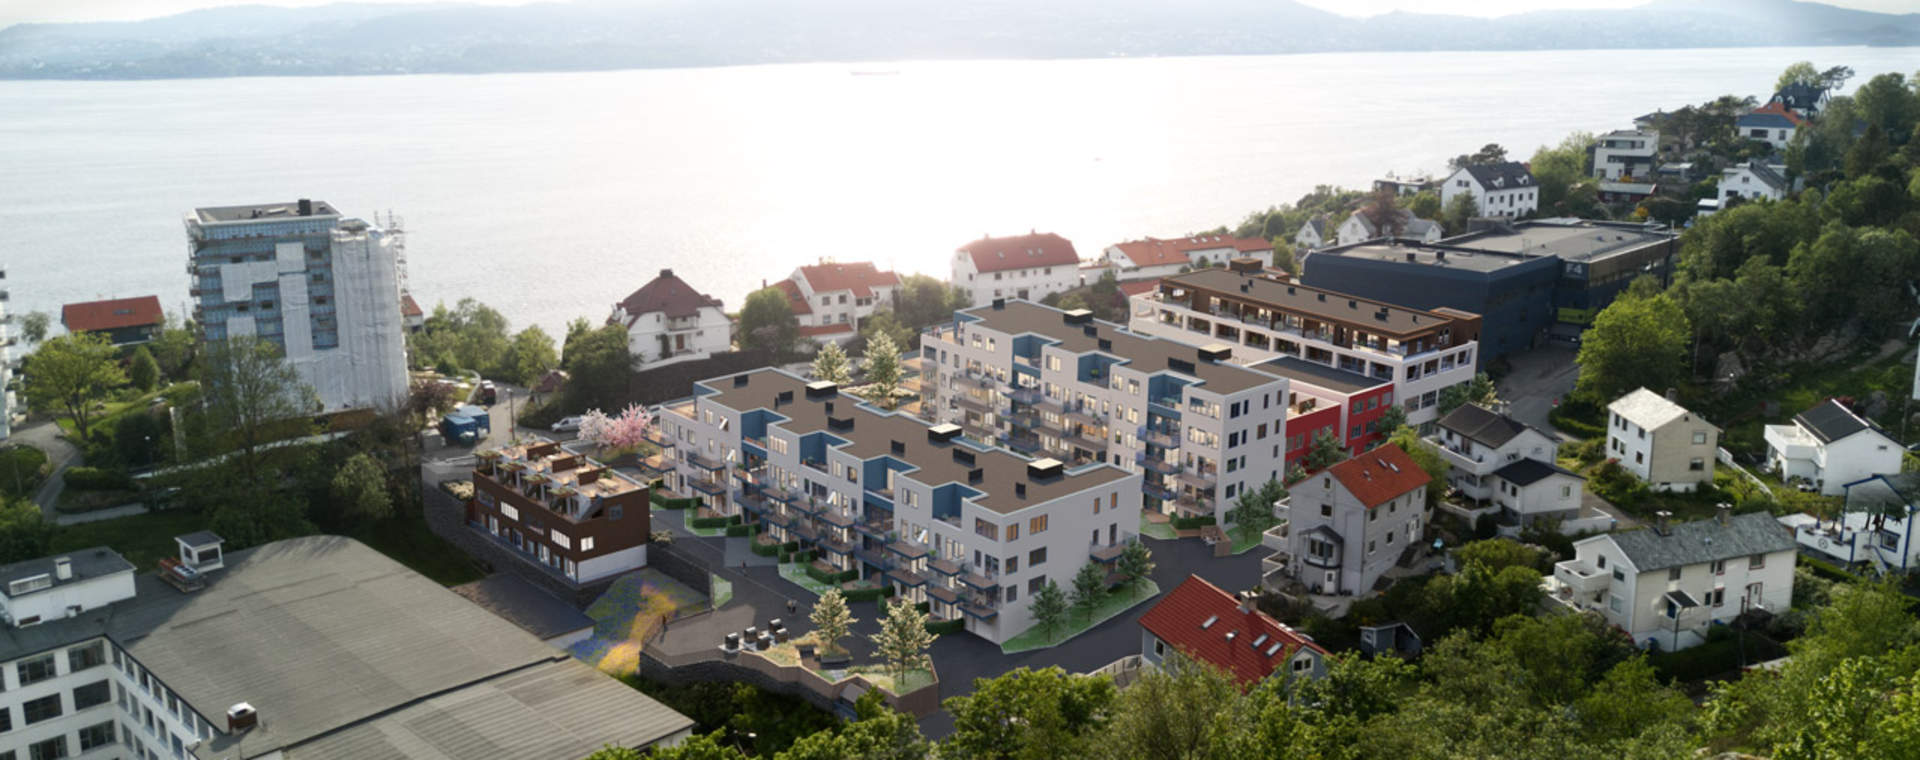 Nye boliger i Ytre Sandviken tæt på sjøen